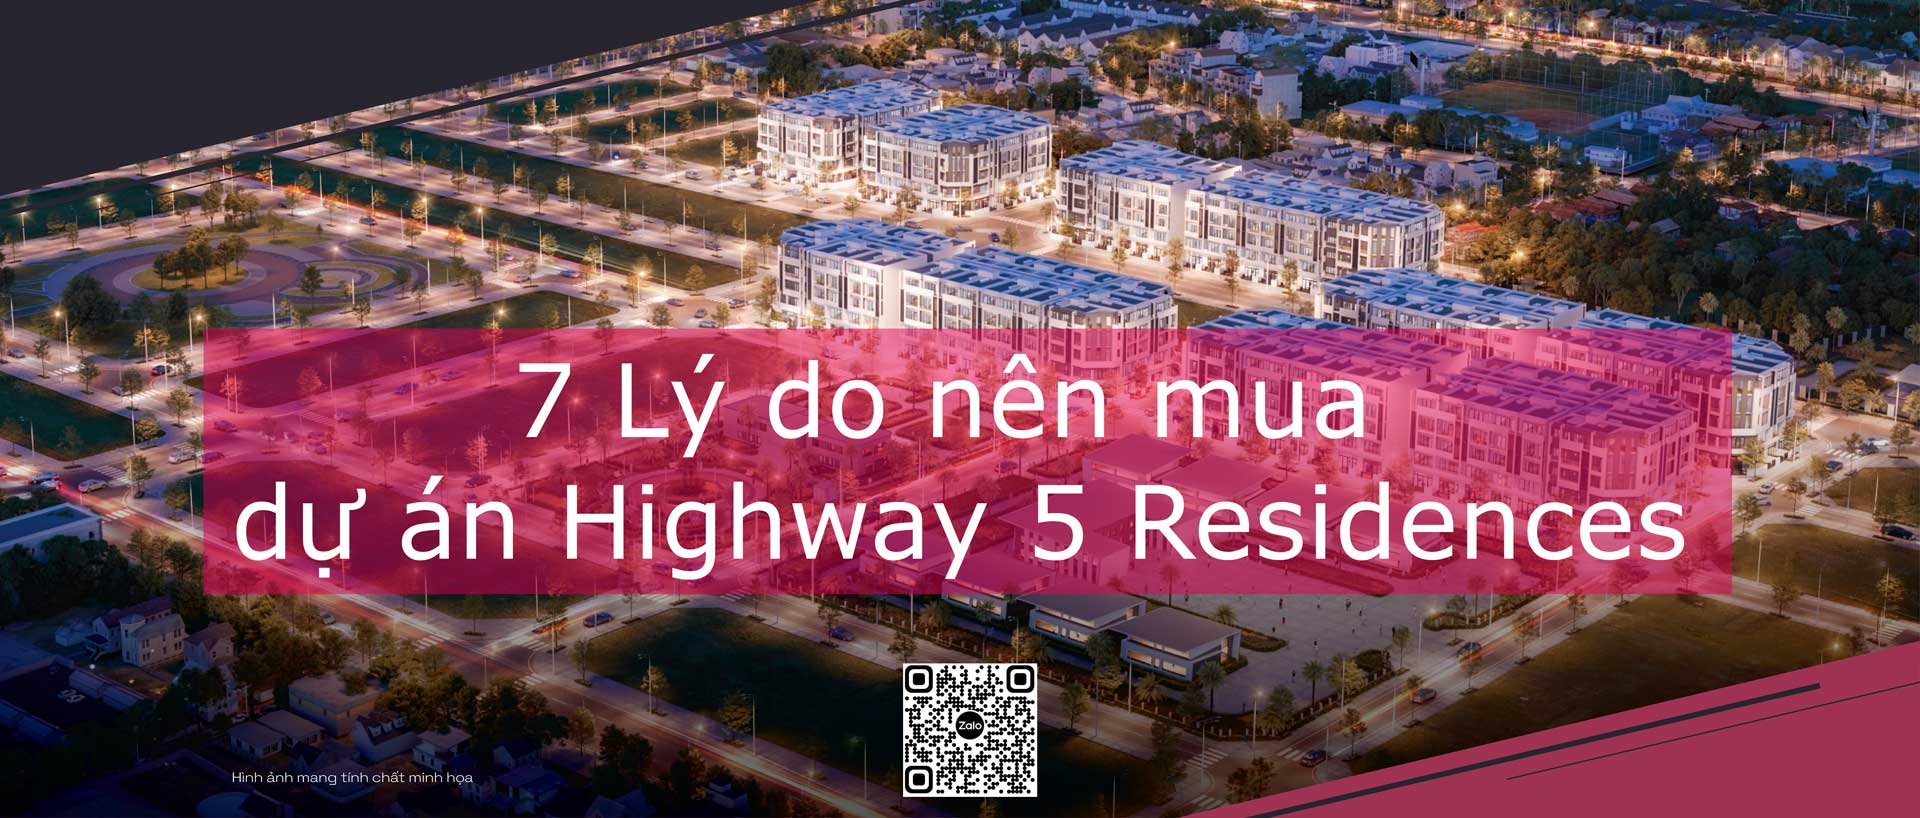 7 lý do nên mua dự án Highway 5 Residences gia lâm